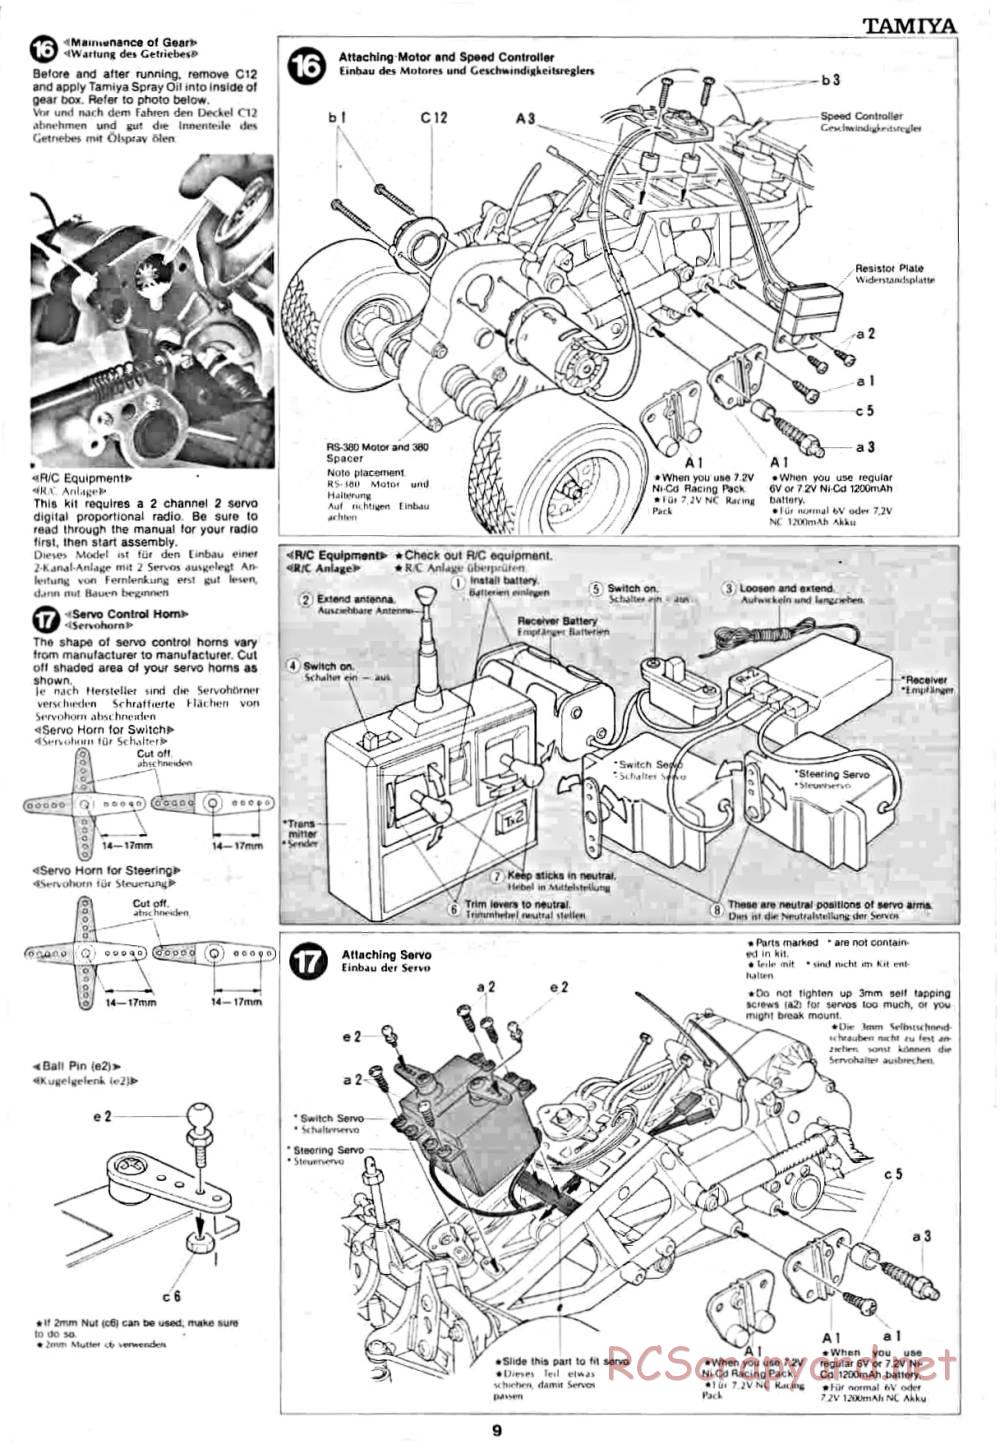 Tamiya - Lancia Rally - 58040 - Manual - Page 9